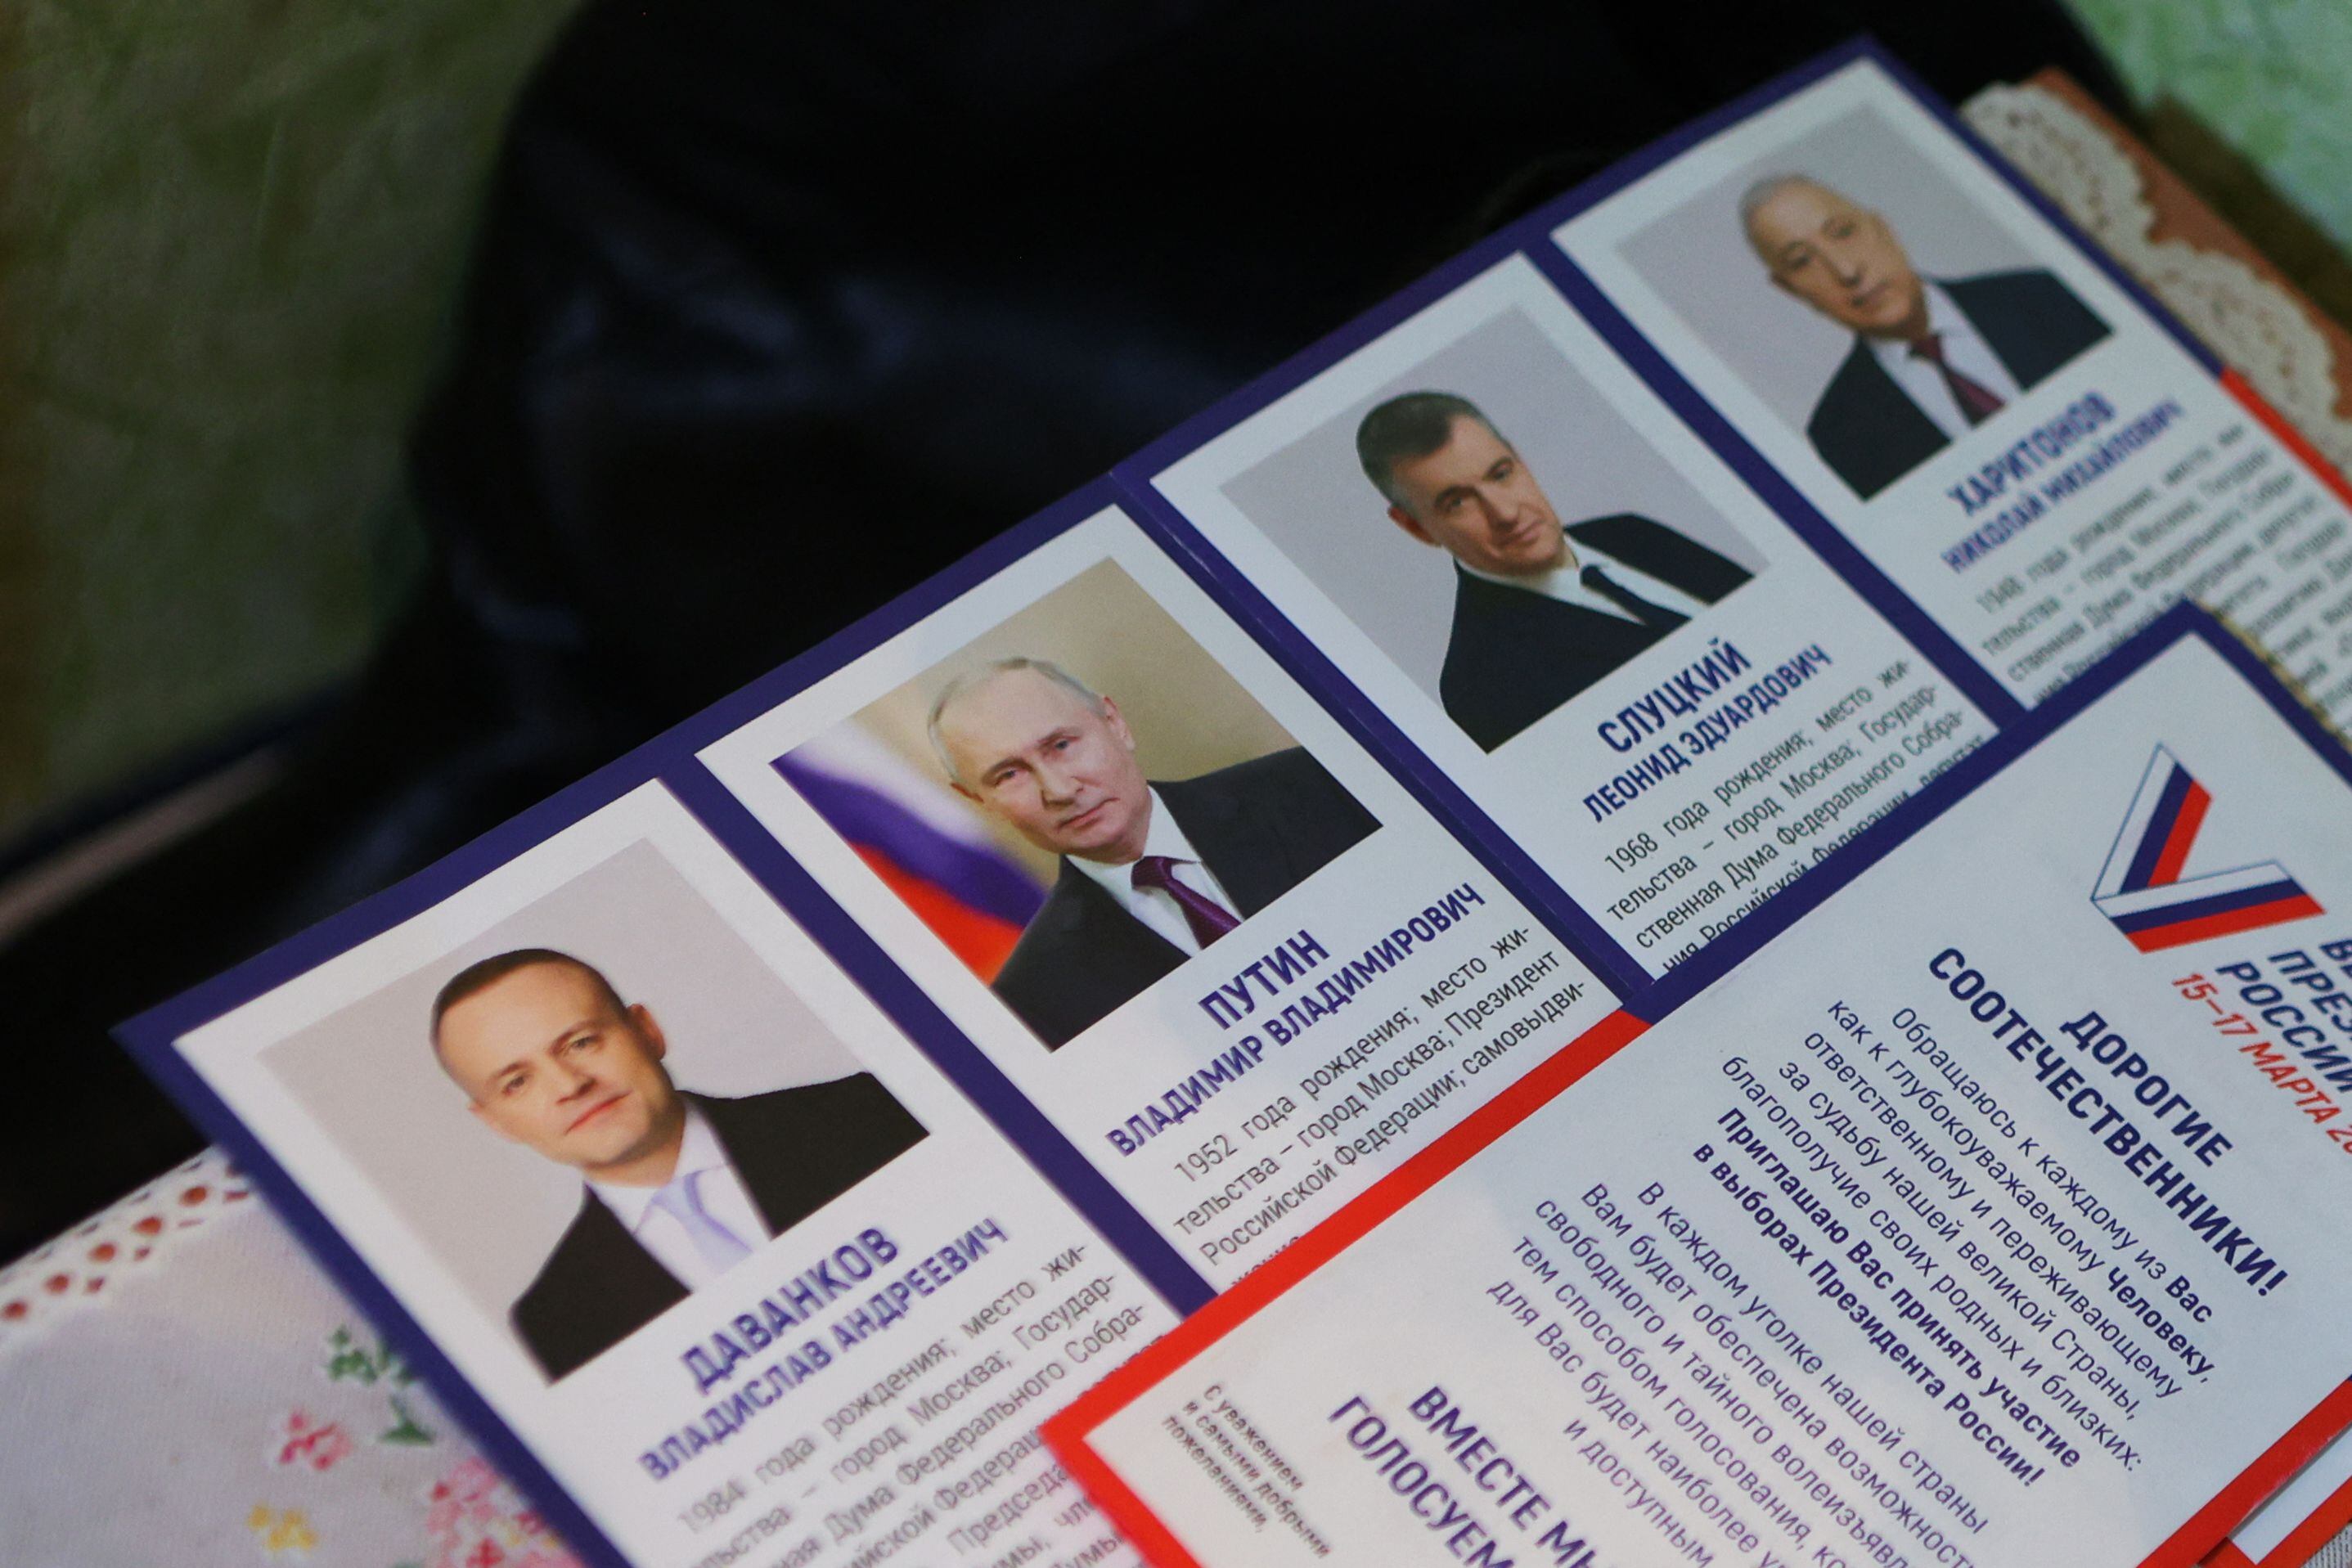 A pesar de la ausencia de una verdadera oposición, tres candidatos fueron autorizados para participar: el nacionalista Leonid Slutski, el comunista Nikolái Jaritonov y el empresario Vladislav Davankov, todos respaldando la campaña militar en Ucrania.